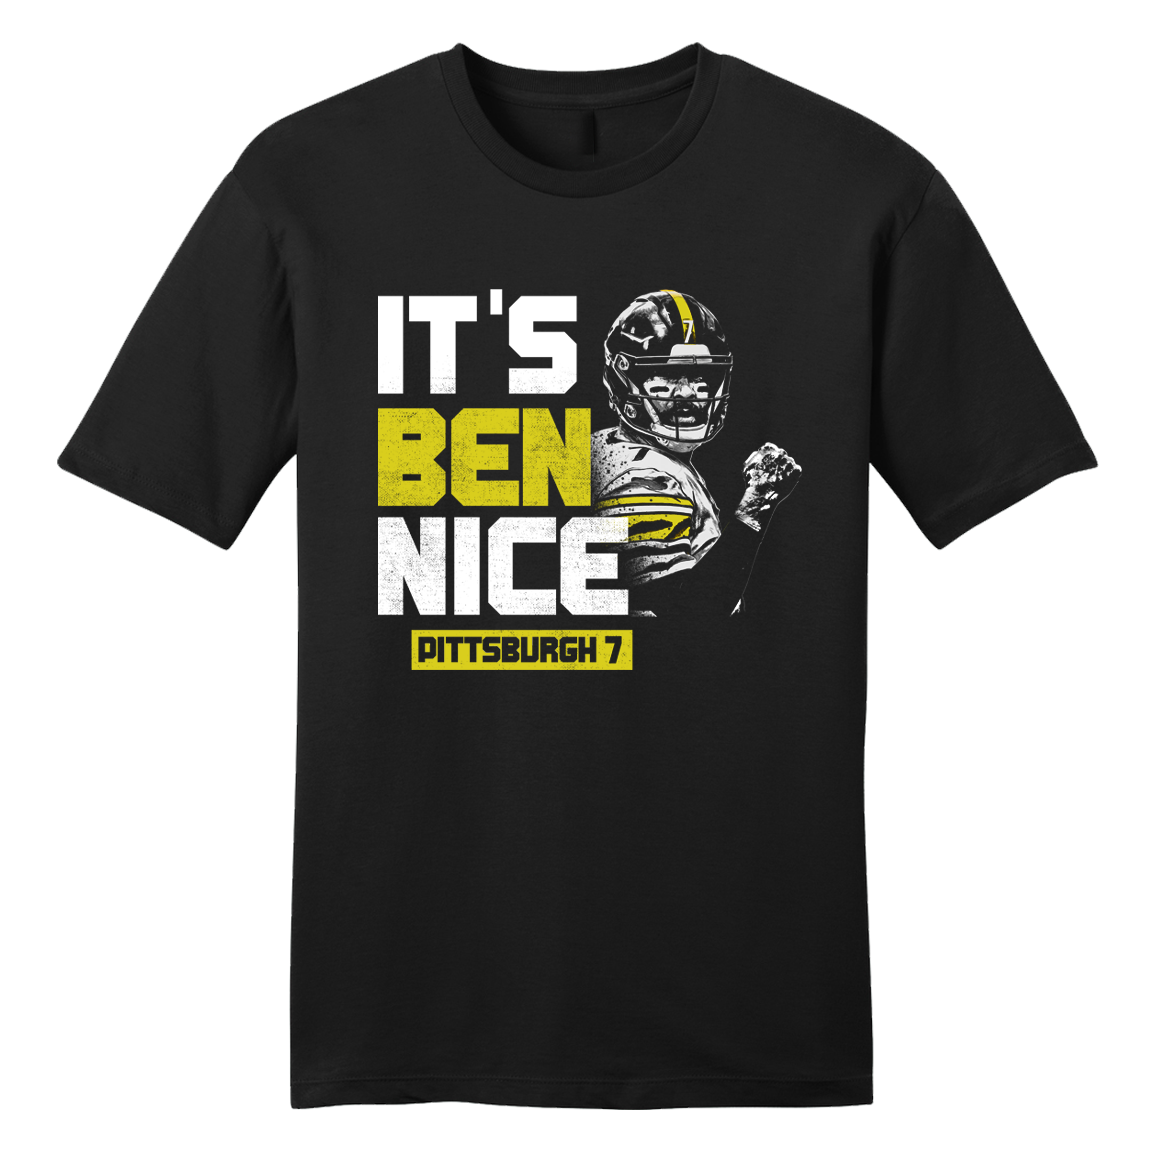 It's Ben Nice tee